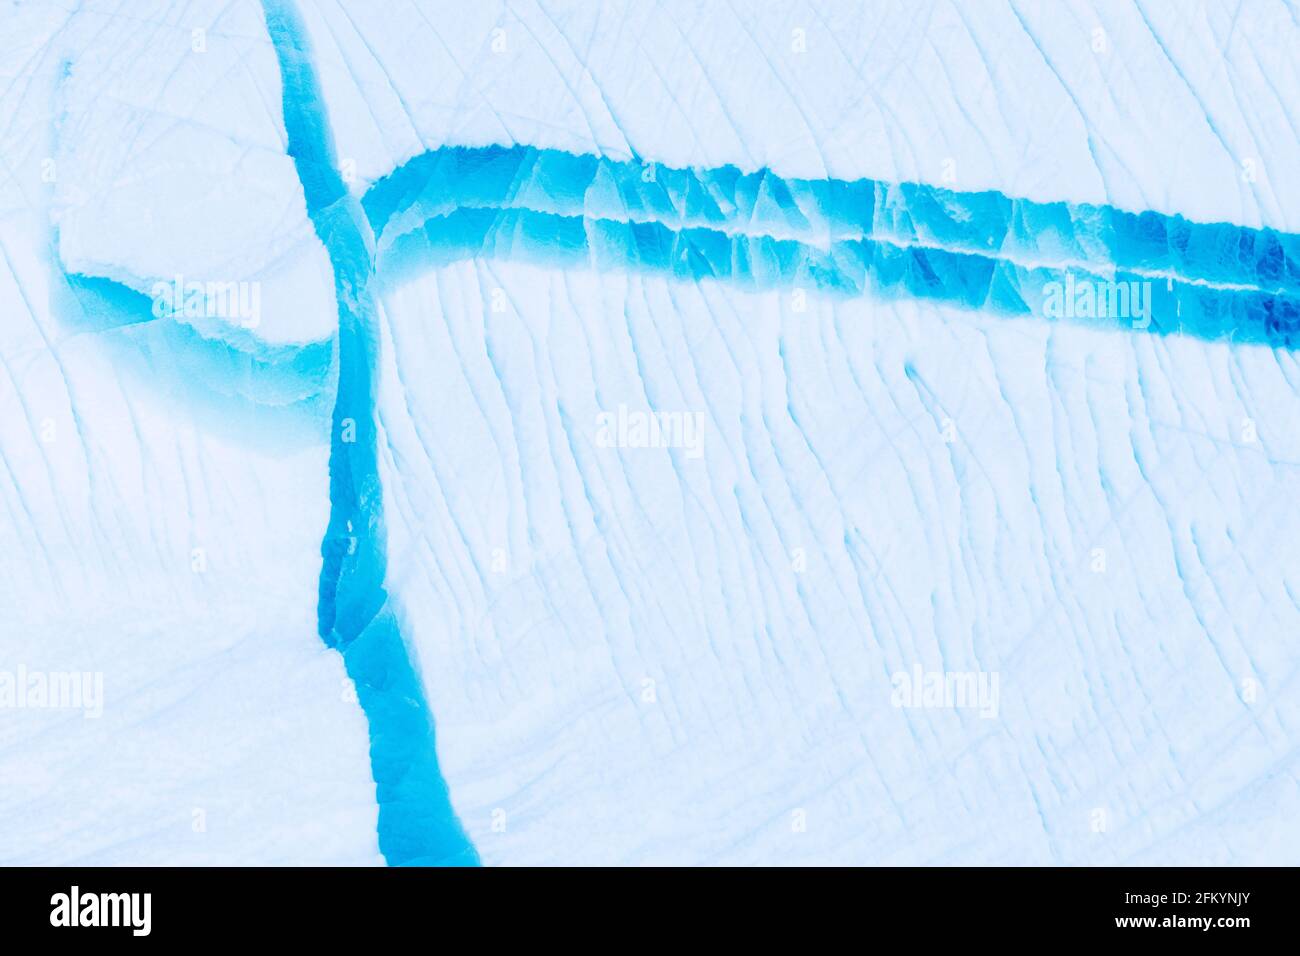 Résumé de la glace glaciaire, Iceberg s'est calmé du glacier du Groenland Icecap dans le fjord de Dødes, fjord des morts, baie de Baffin, Groenland. Banque D'Images